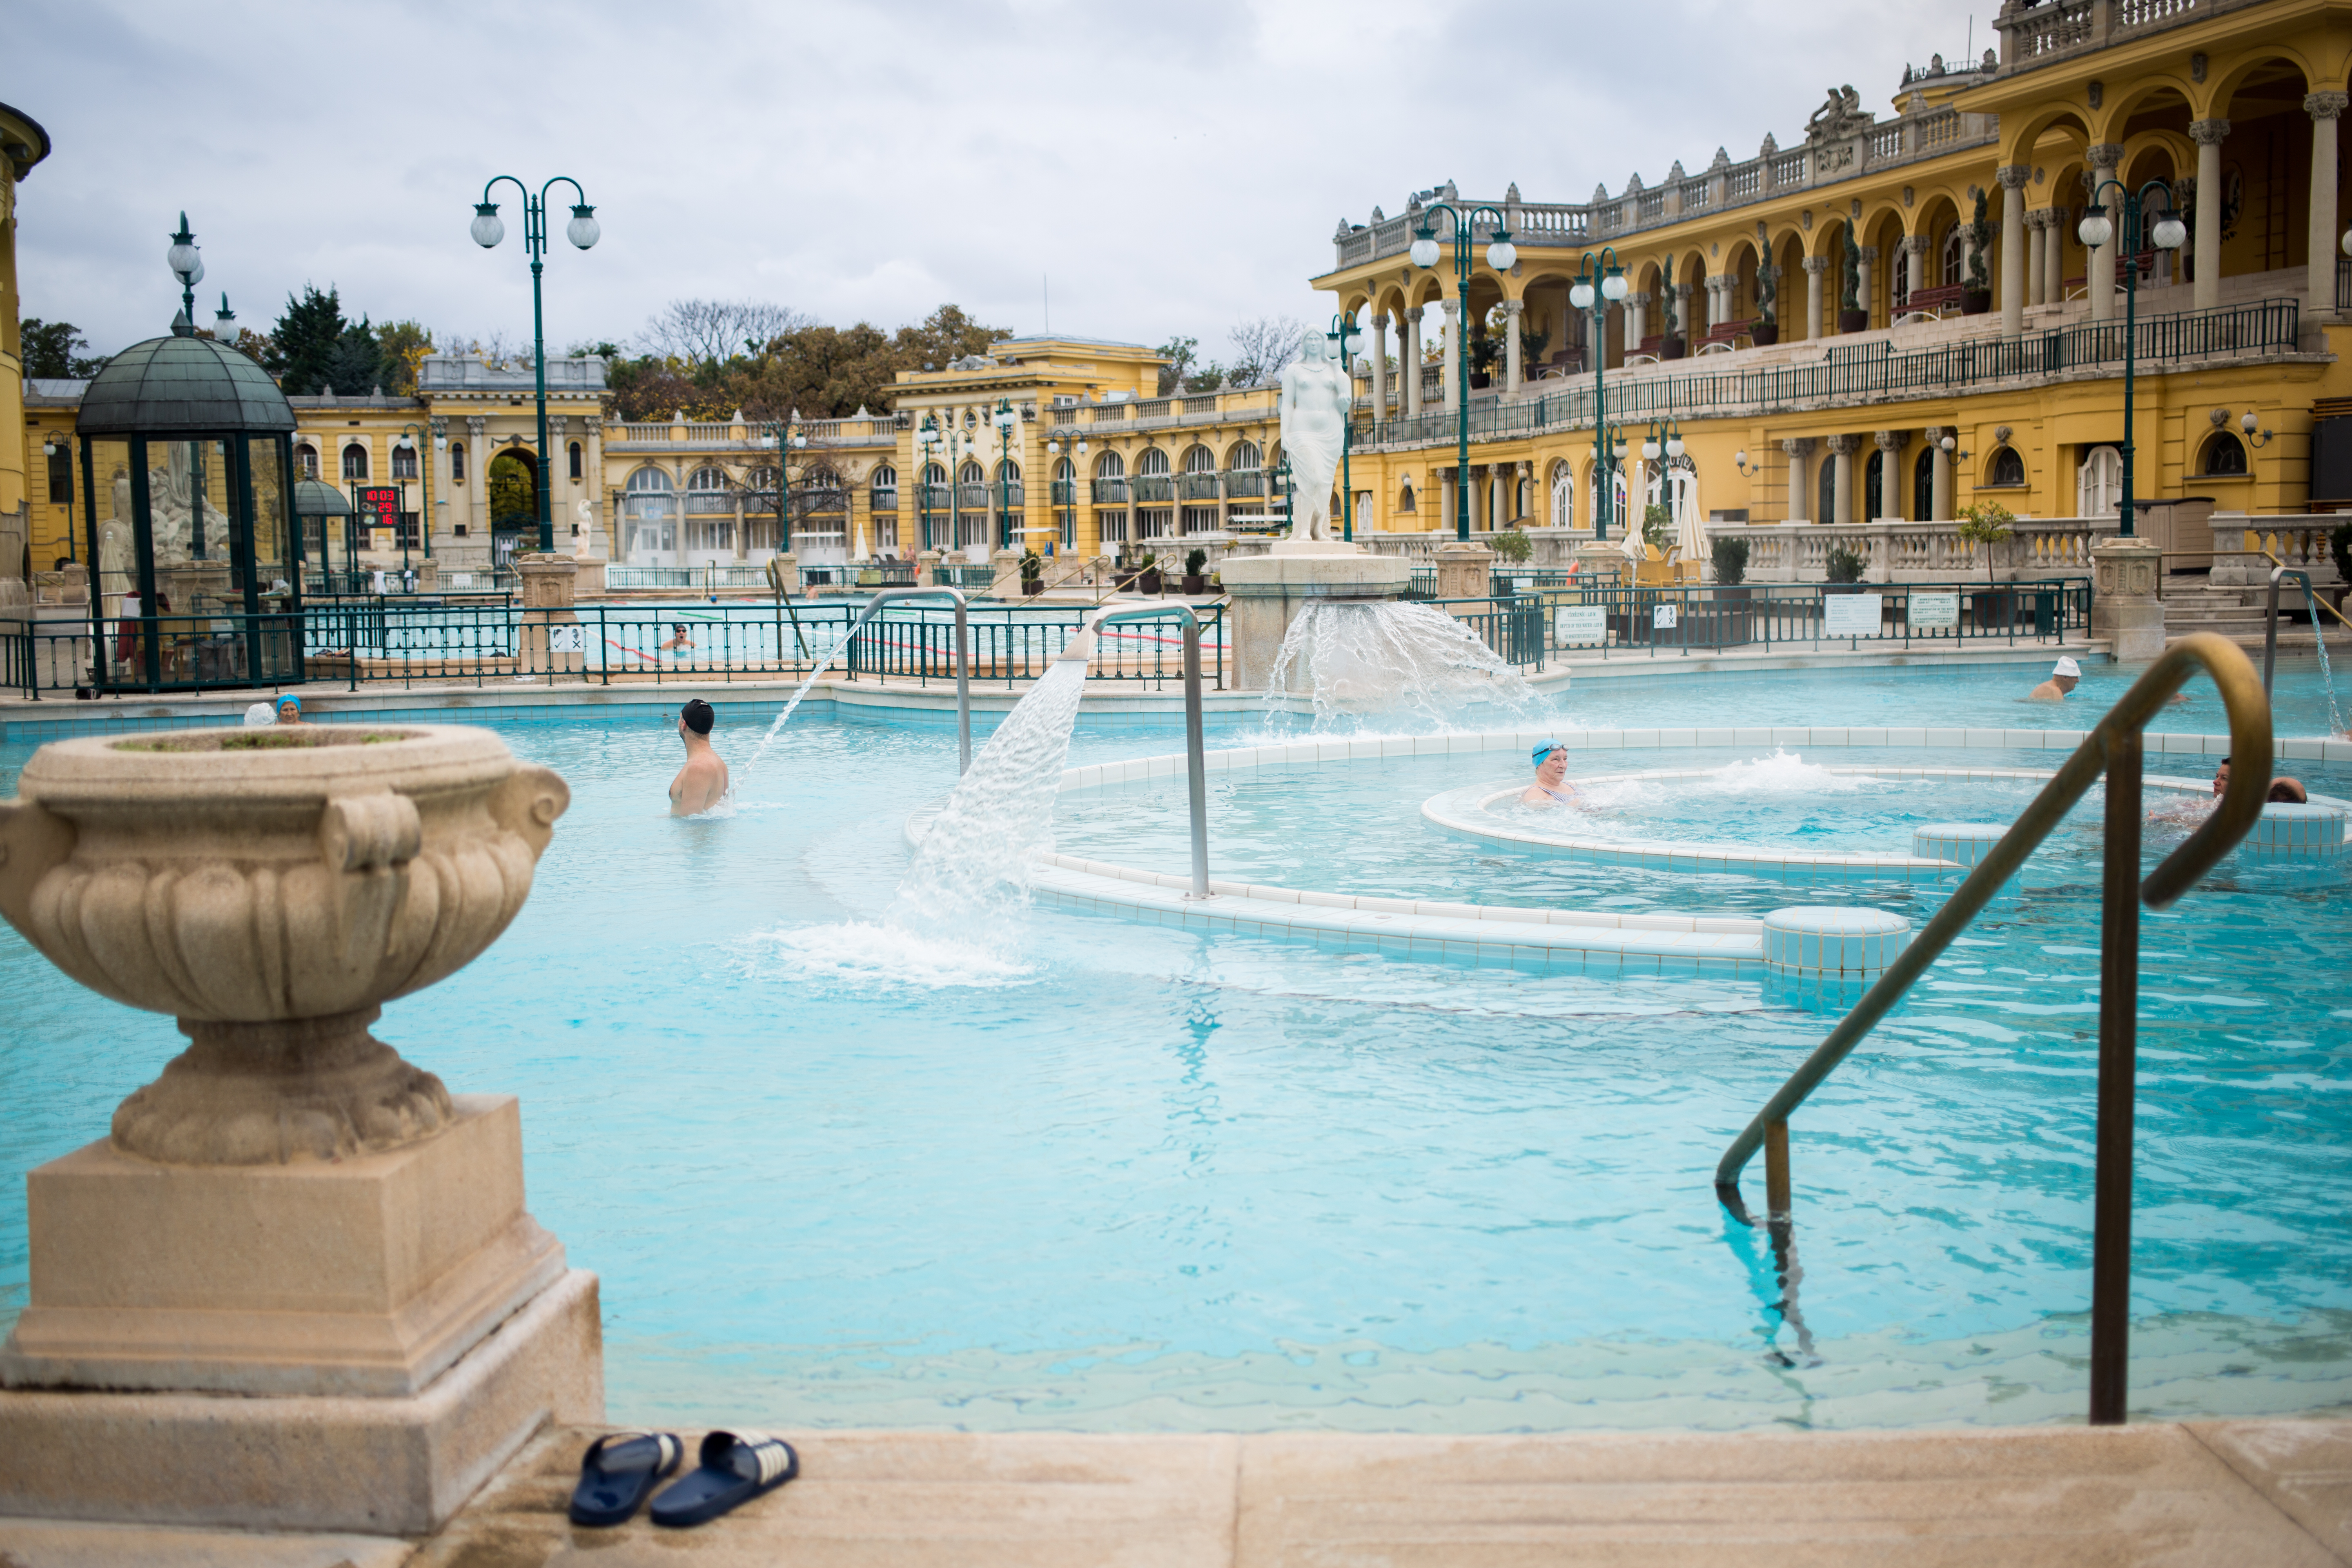 Két magyar fürdőnek is helye van Európa legjobb termálfürdői között a Mirror brit napilap szerint